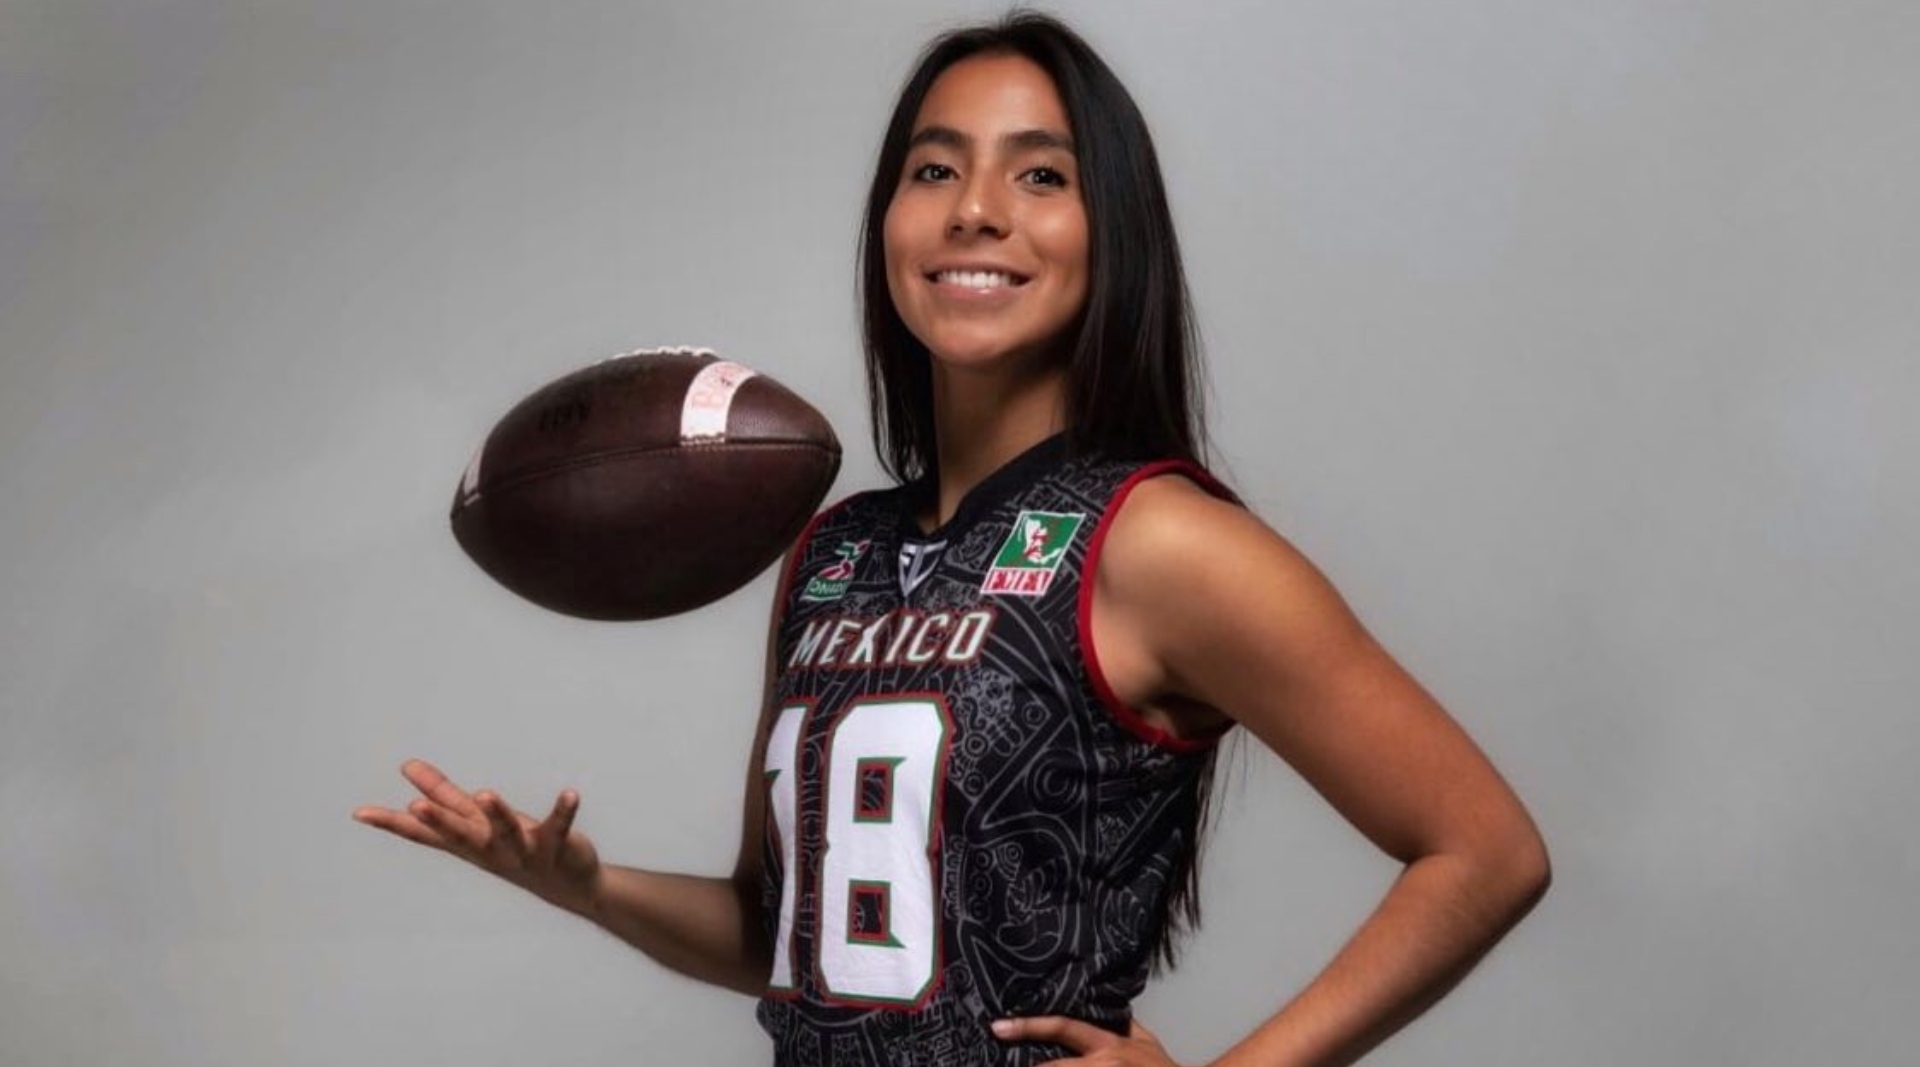 Quién Es Diana Flores La Atleta Mexicana Que Tuvo Una Aparición Estelar En El Super Bowl Lvii